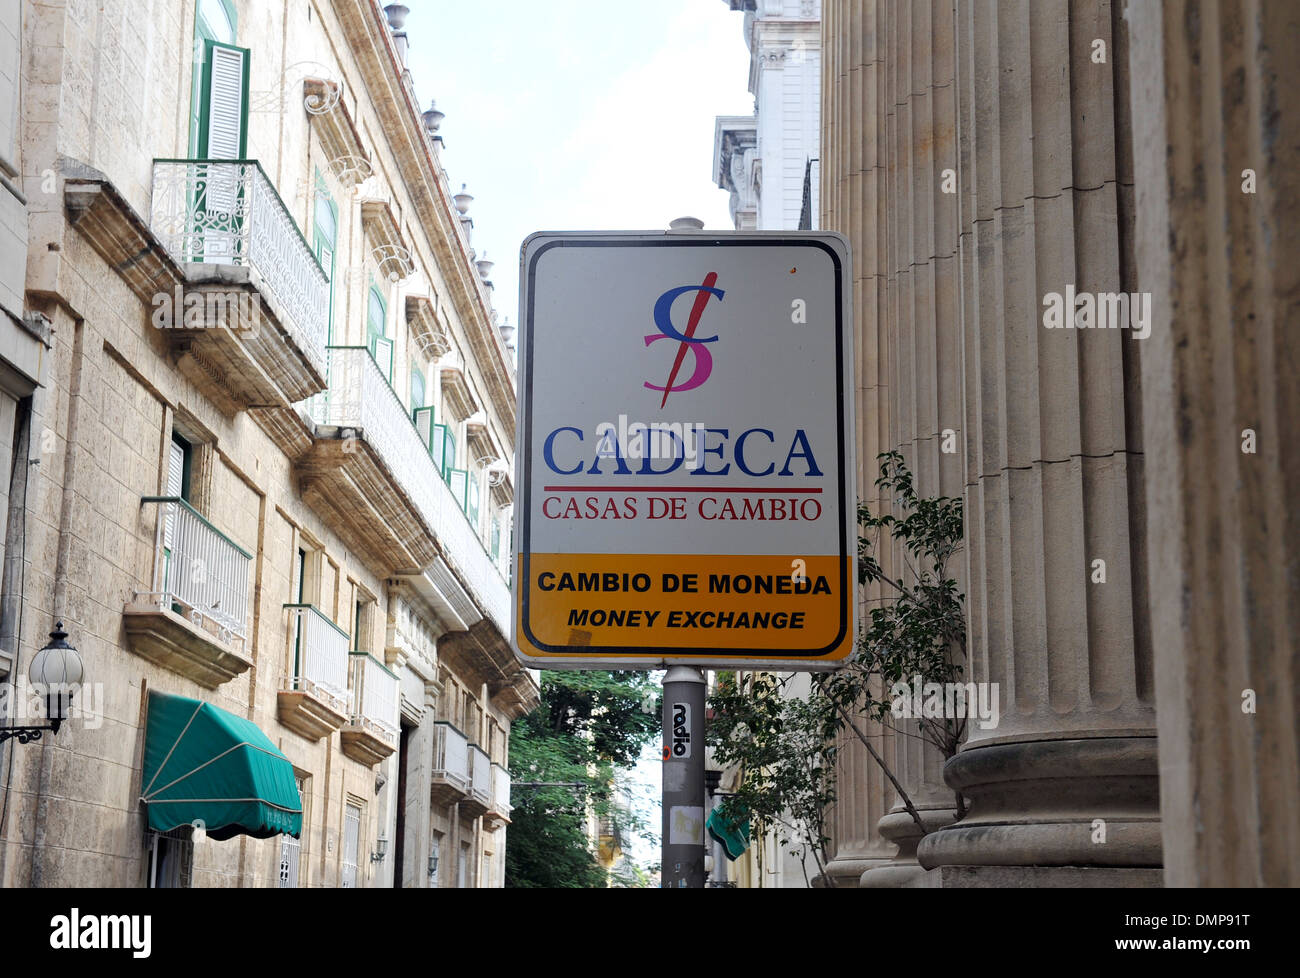 Cadeca, official money exchange in Havana, Cuba Stock Photo